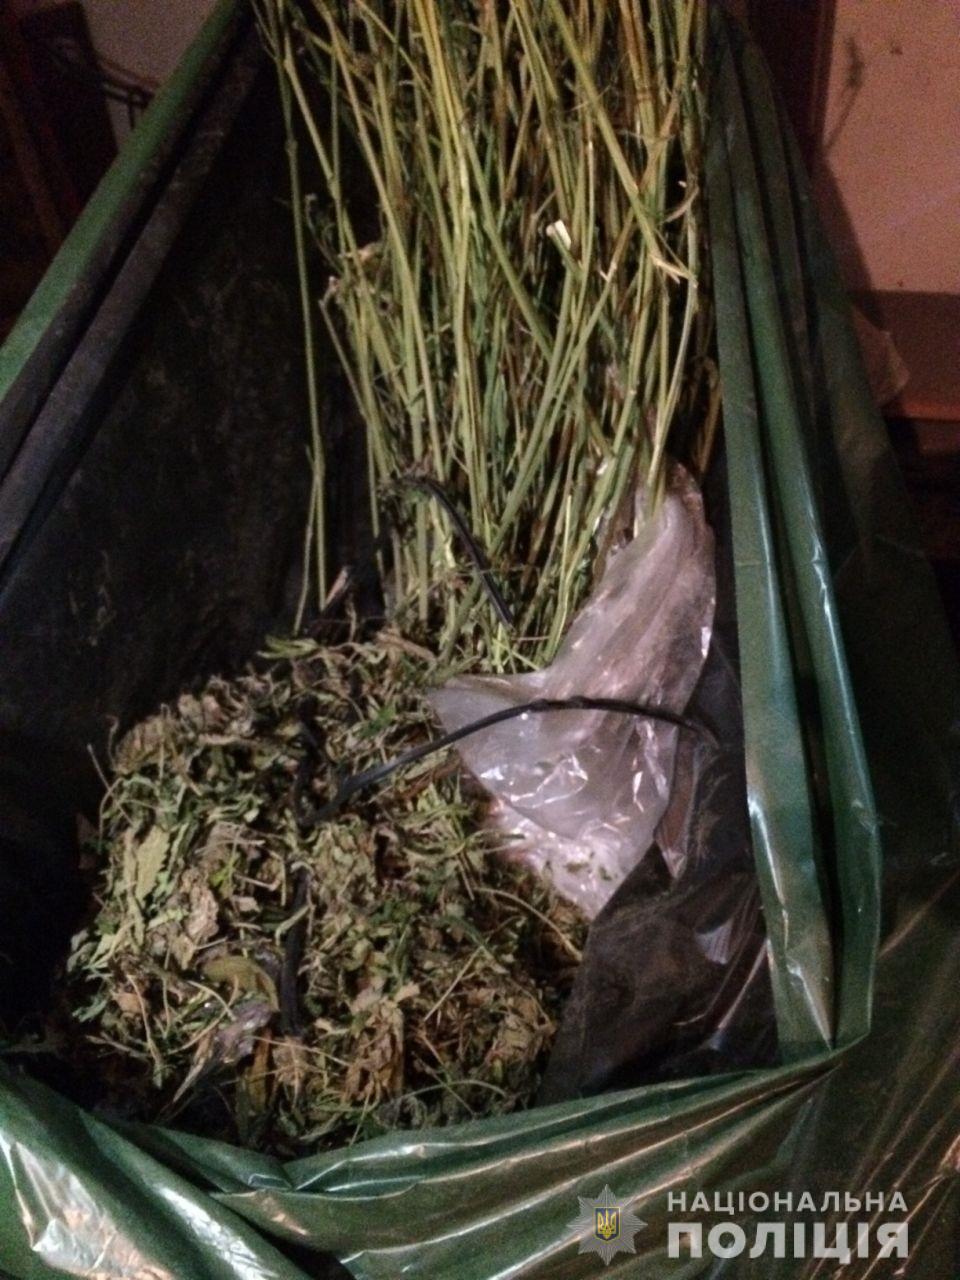 Під час обшуку в будинку мешканця Чинадієва на Мукачівщині знайшли марихуану та сухі стебла конопель (ФОТО)